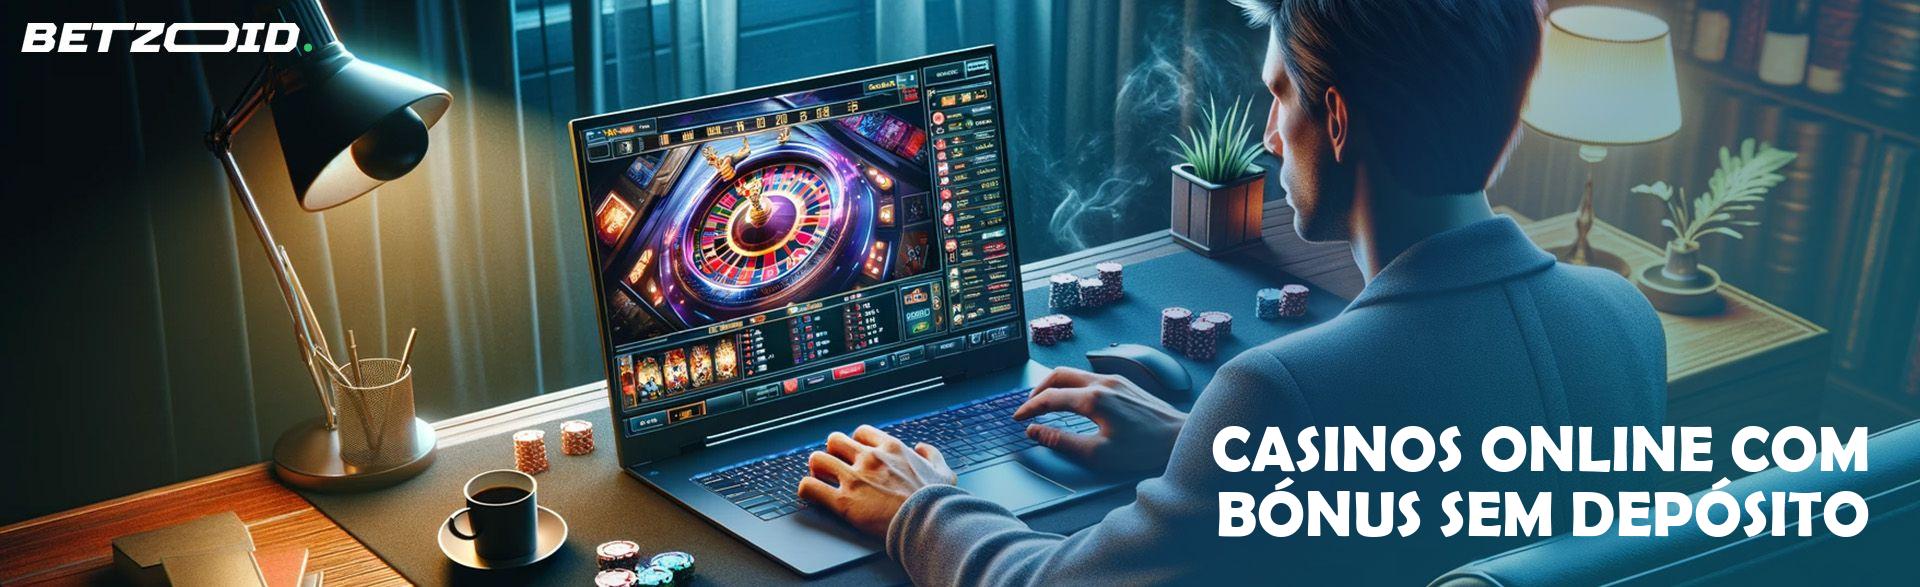 Casinos Online com Bónus Sem Depósito.